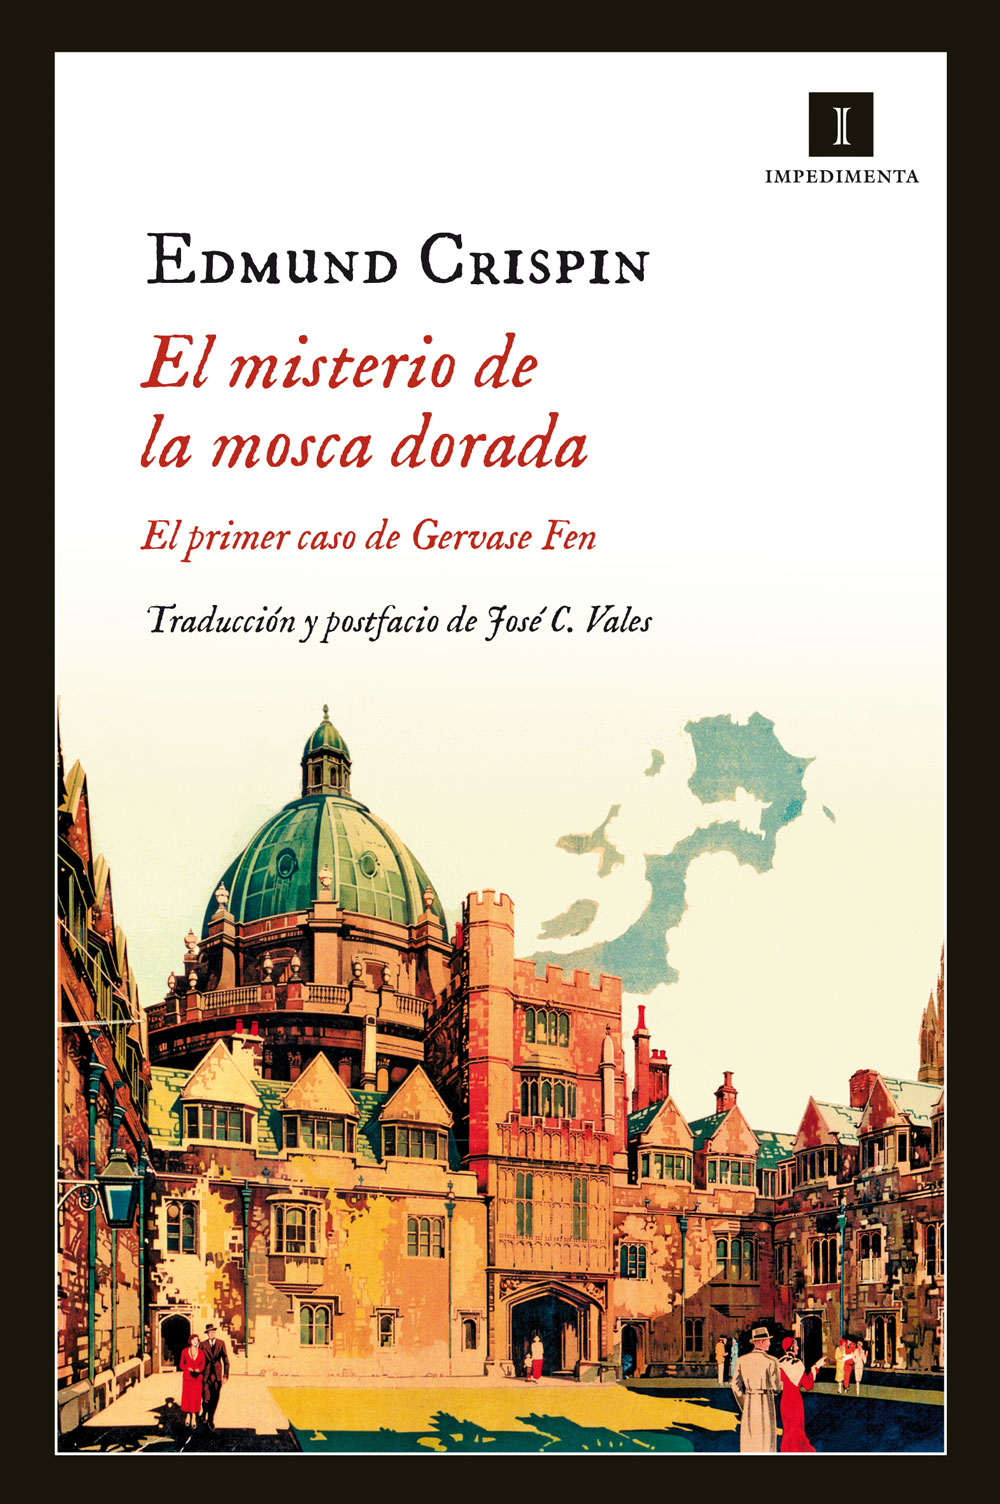 Libro de audio El Misterio de la Mosca Dorada – Edmund Crispin